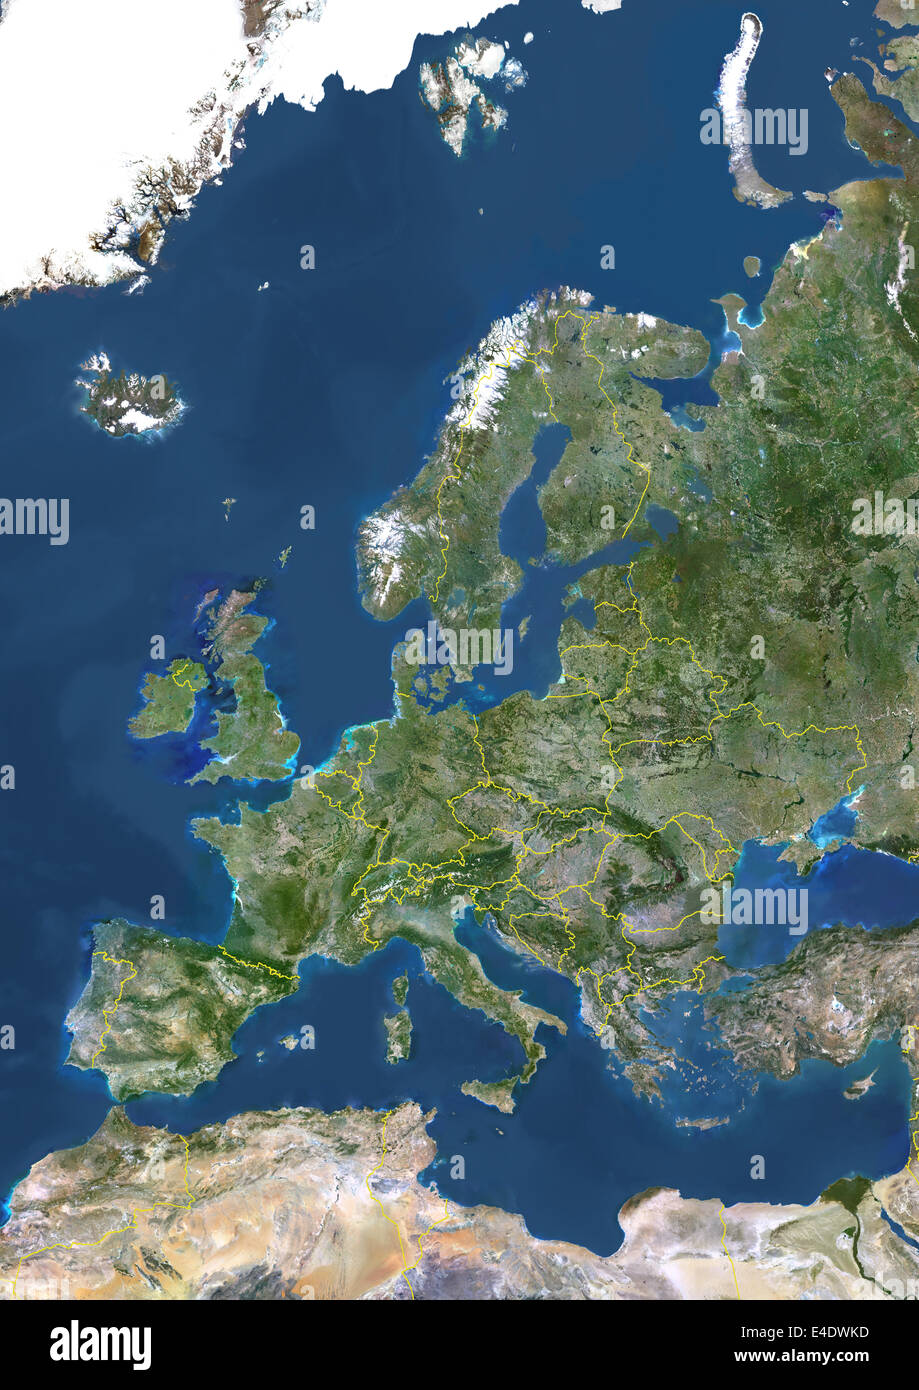 Europa mit Ländergrenzen, wahre Farbe Satellitenbild. Echtfarben